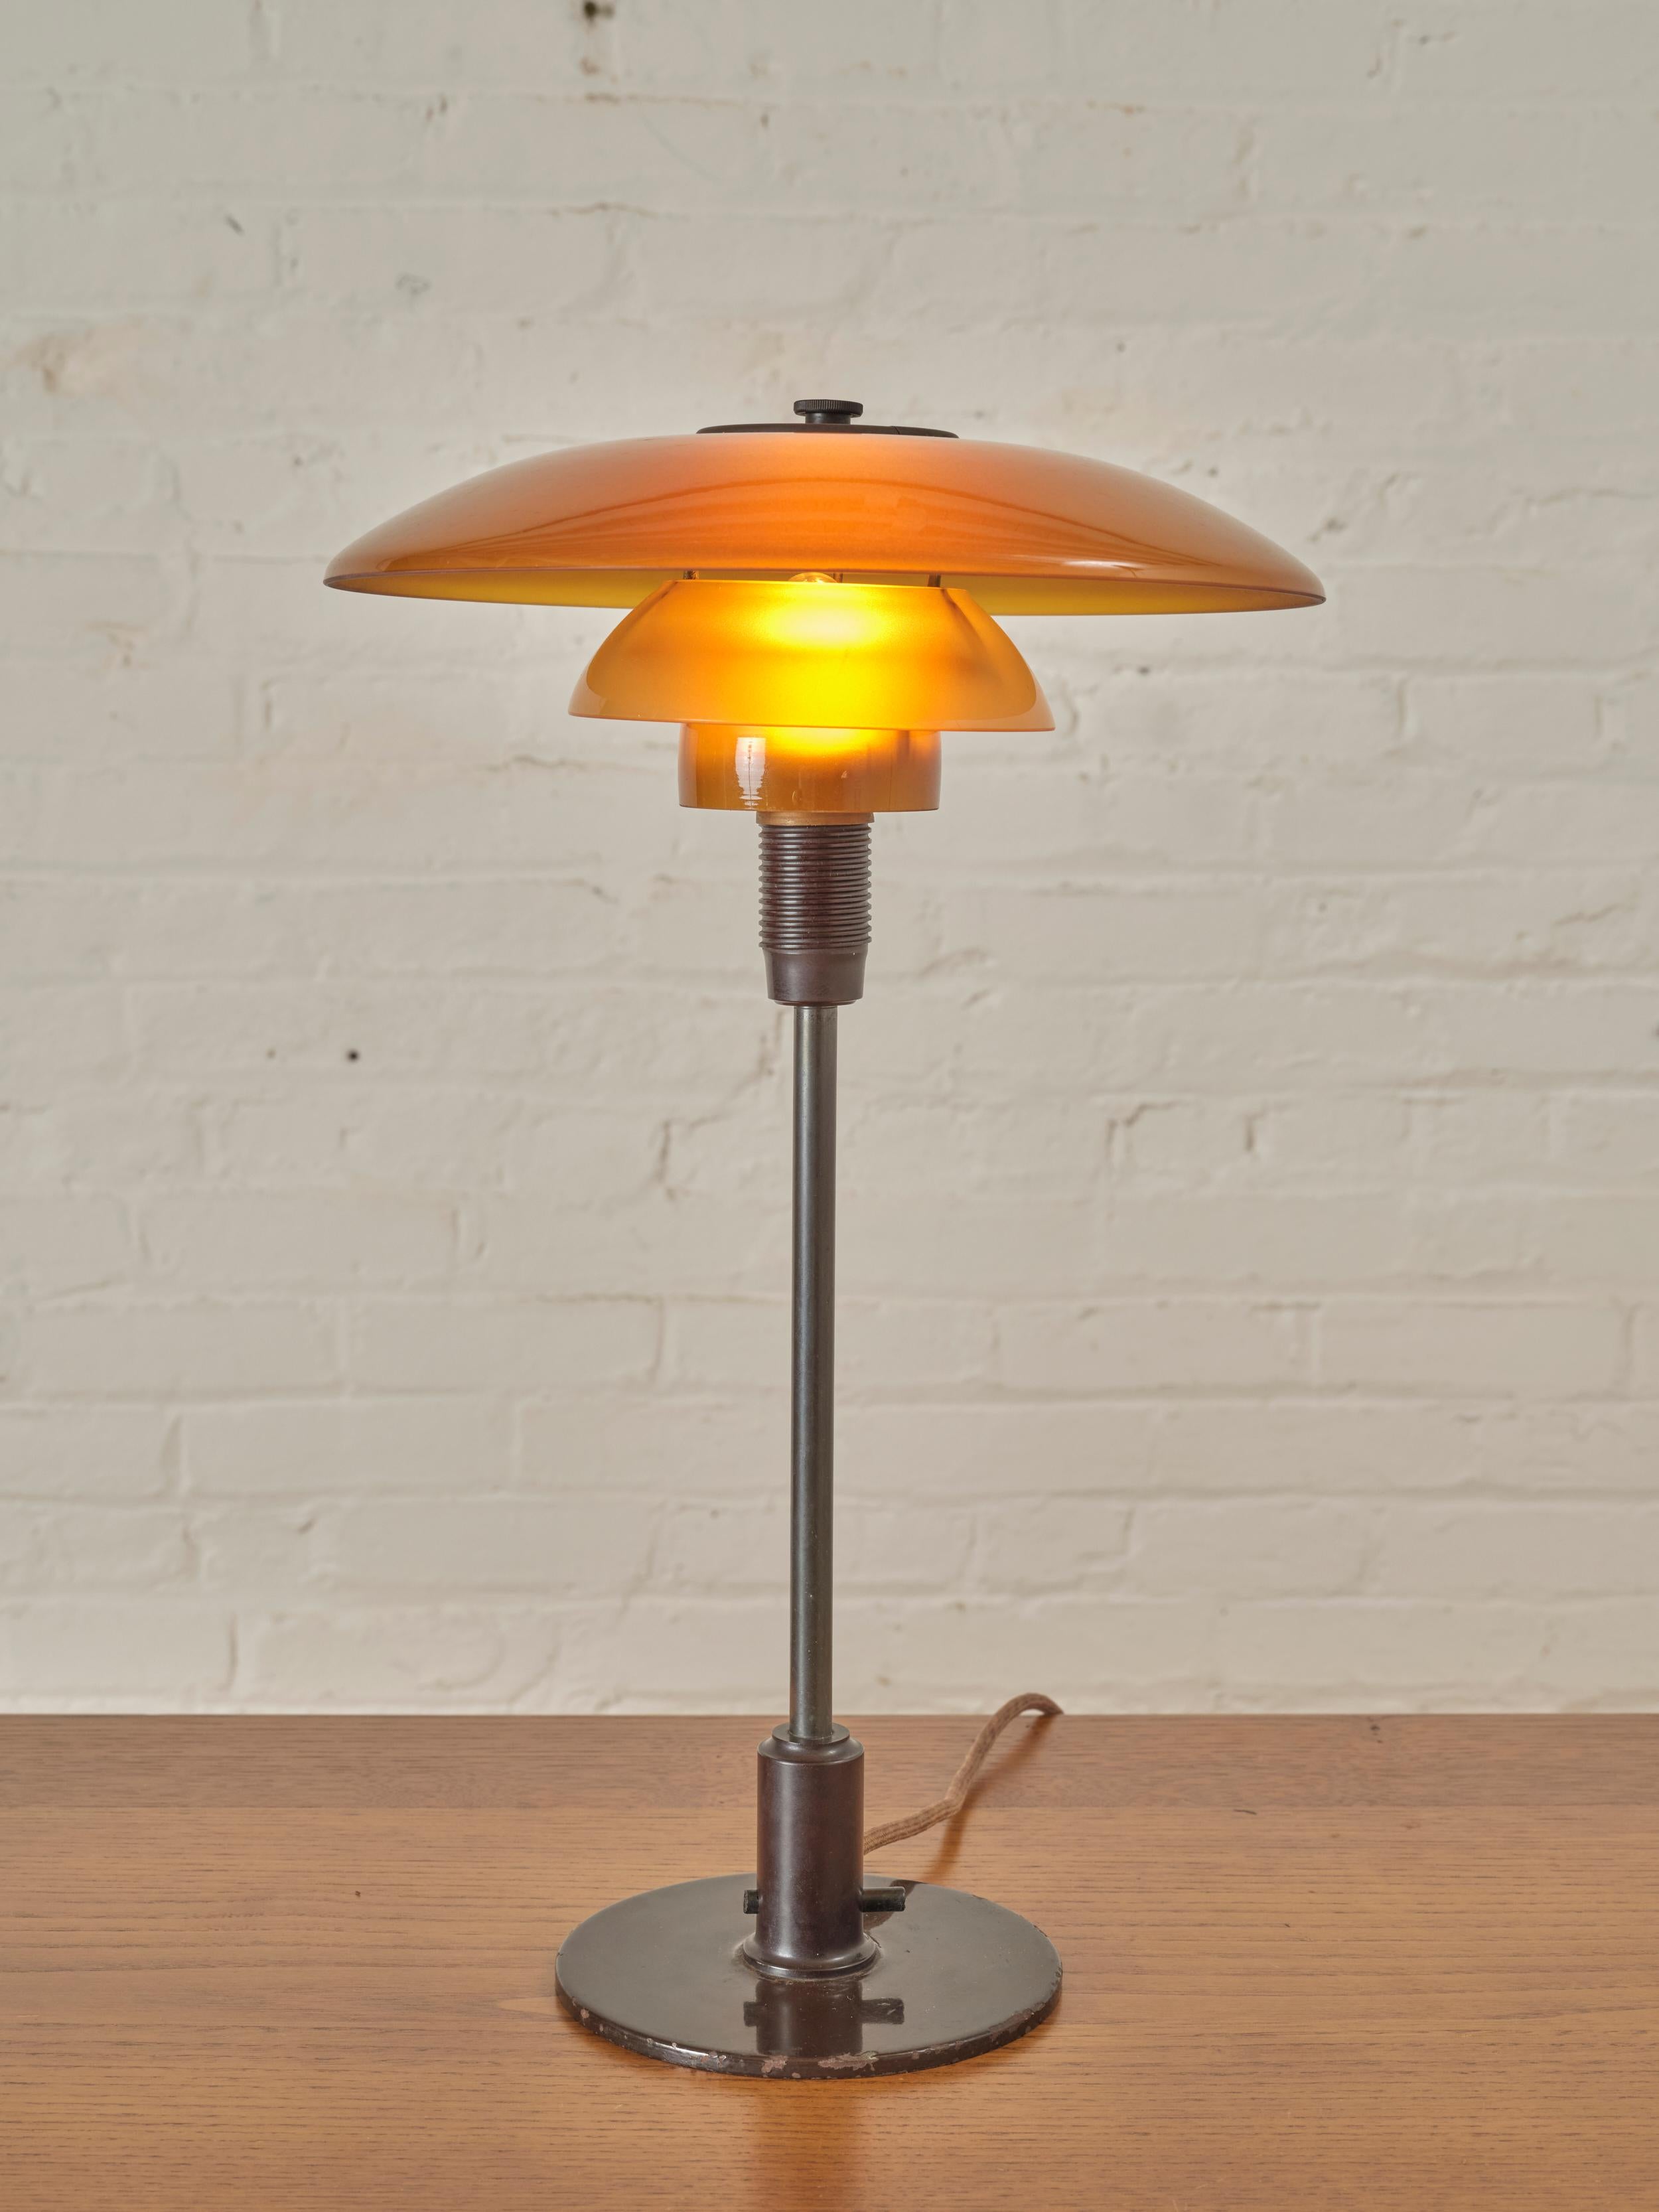 Table PH 4/3 de Poul Henningsen pour Louis Poulsen, présentant un système de lampe à 3 abat-jours en verre ambré soufflé à la main.

